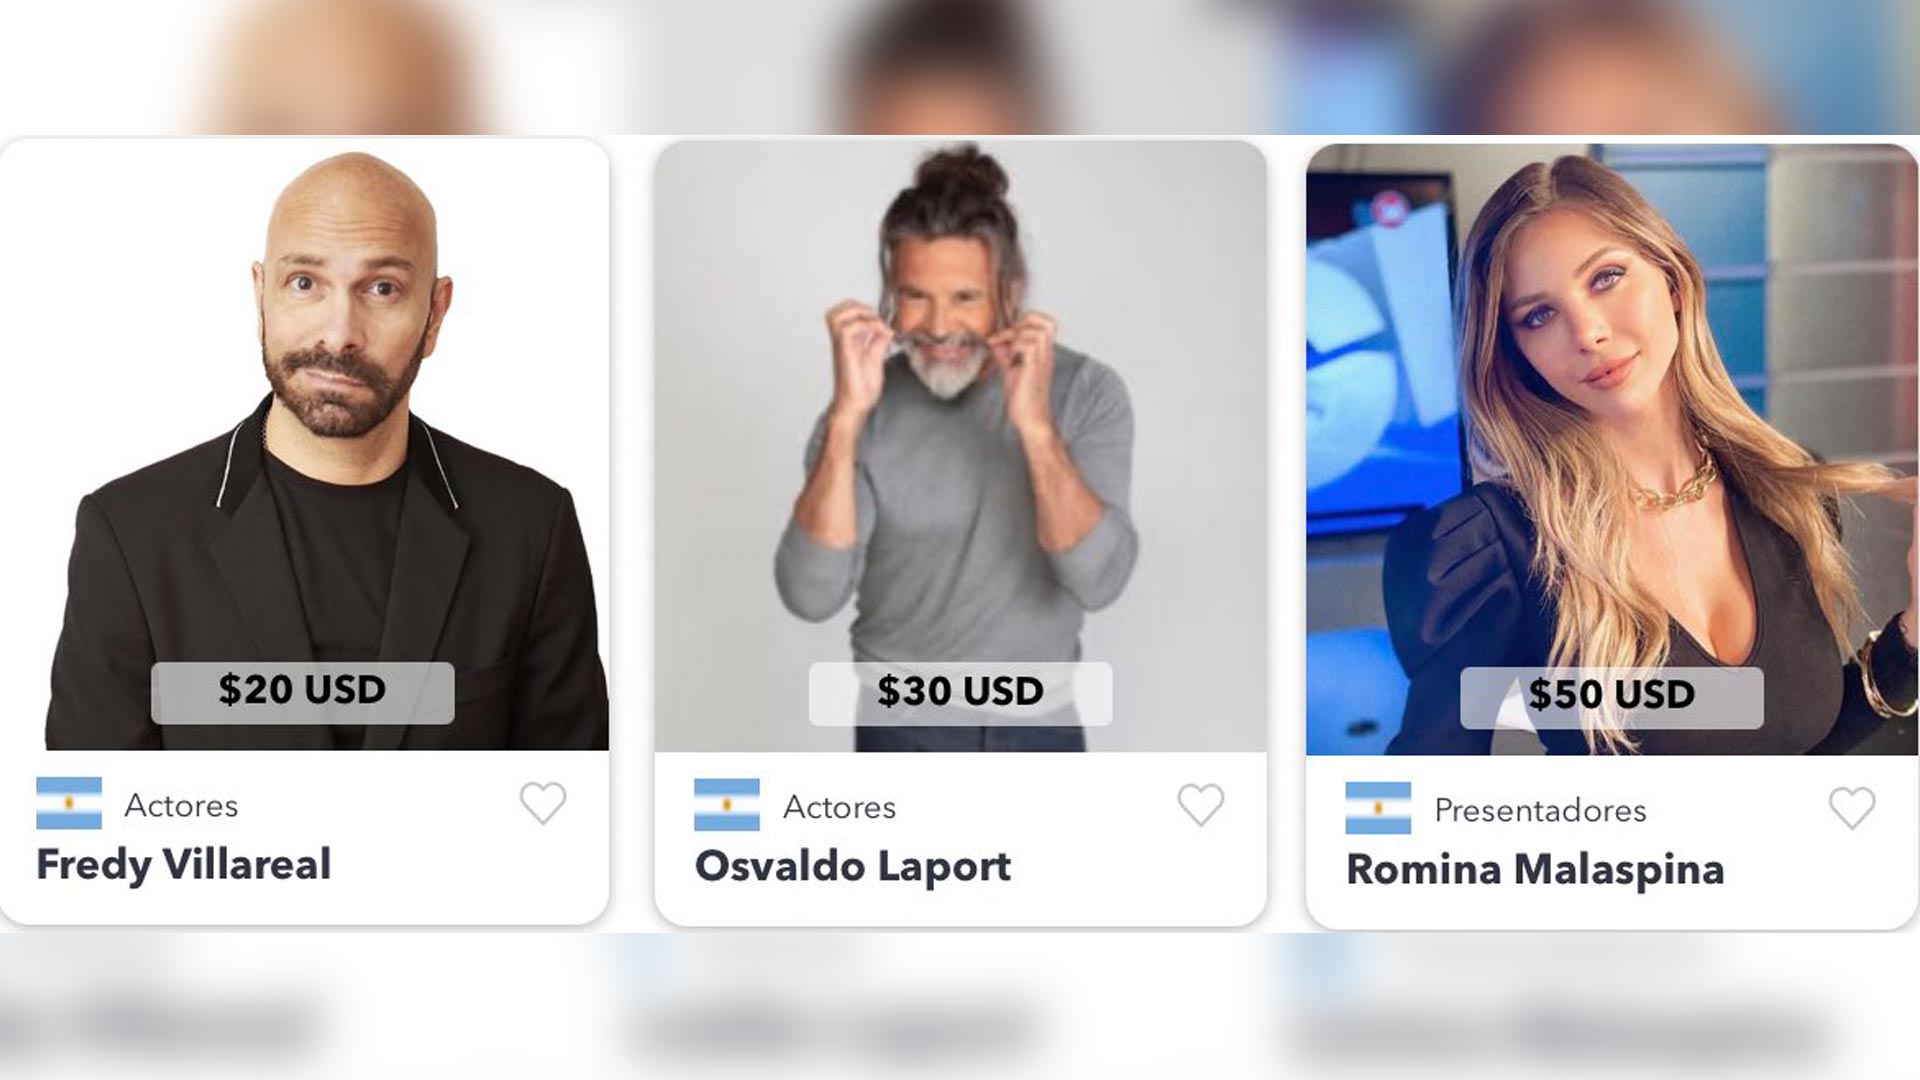 De Fredy Villarreal a Osvaldo Laport y Romina Malaspina: los famosos que cobran en dólares por un saludo personalizado